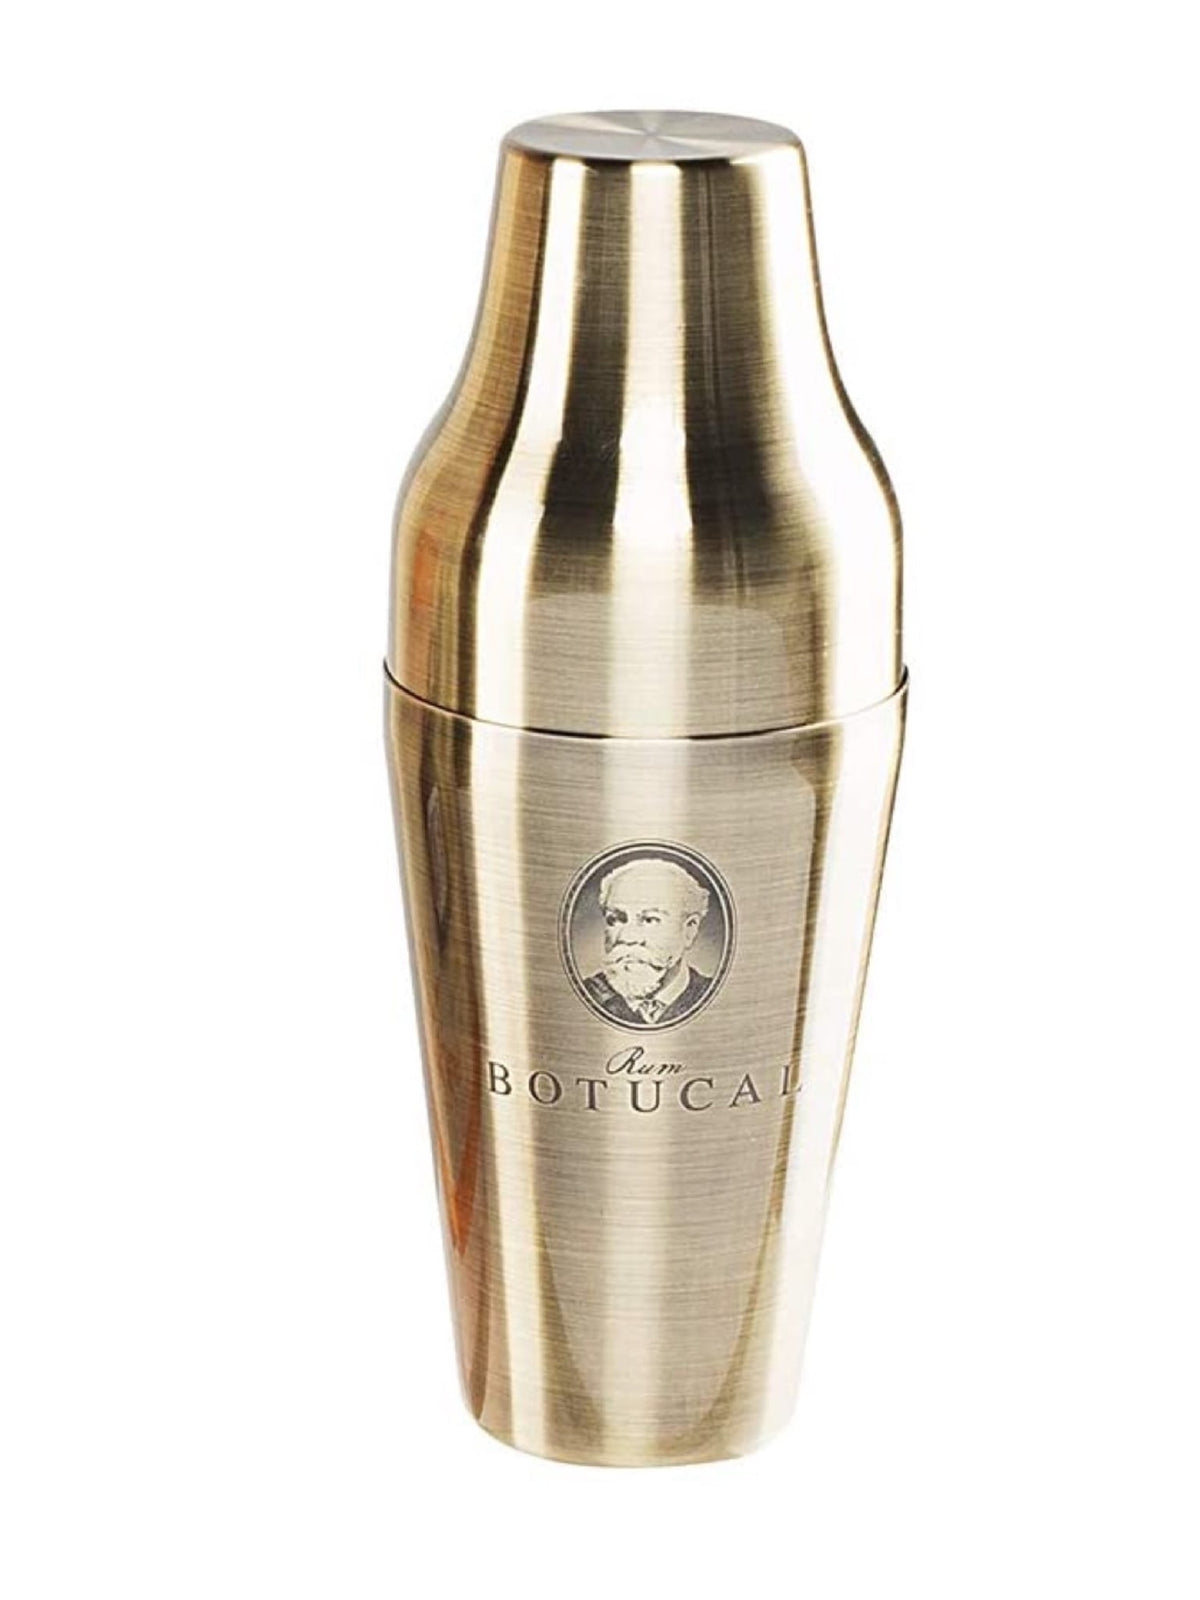 Diplomatico cocktail shaker - En elegant shaker med Diplomatico-logoet, perfekt til at blande lækre cocktails